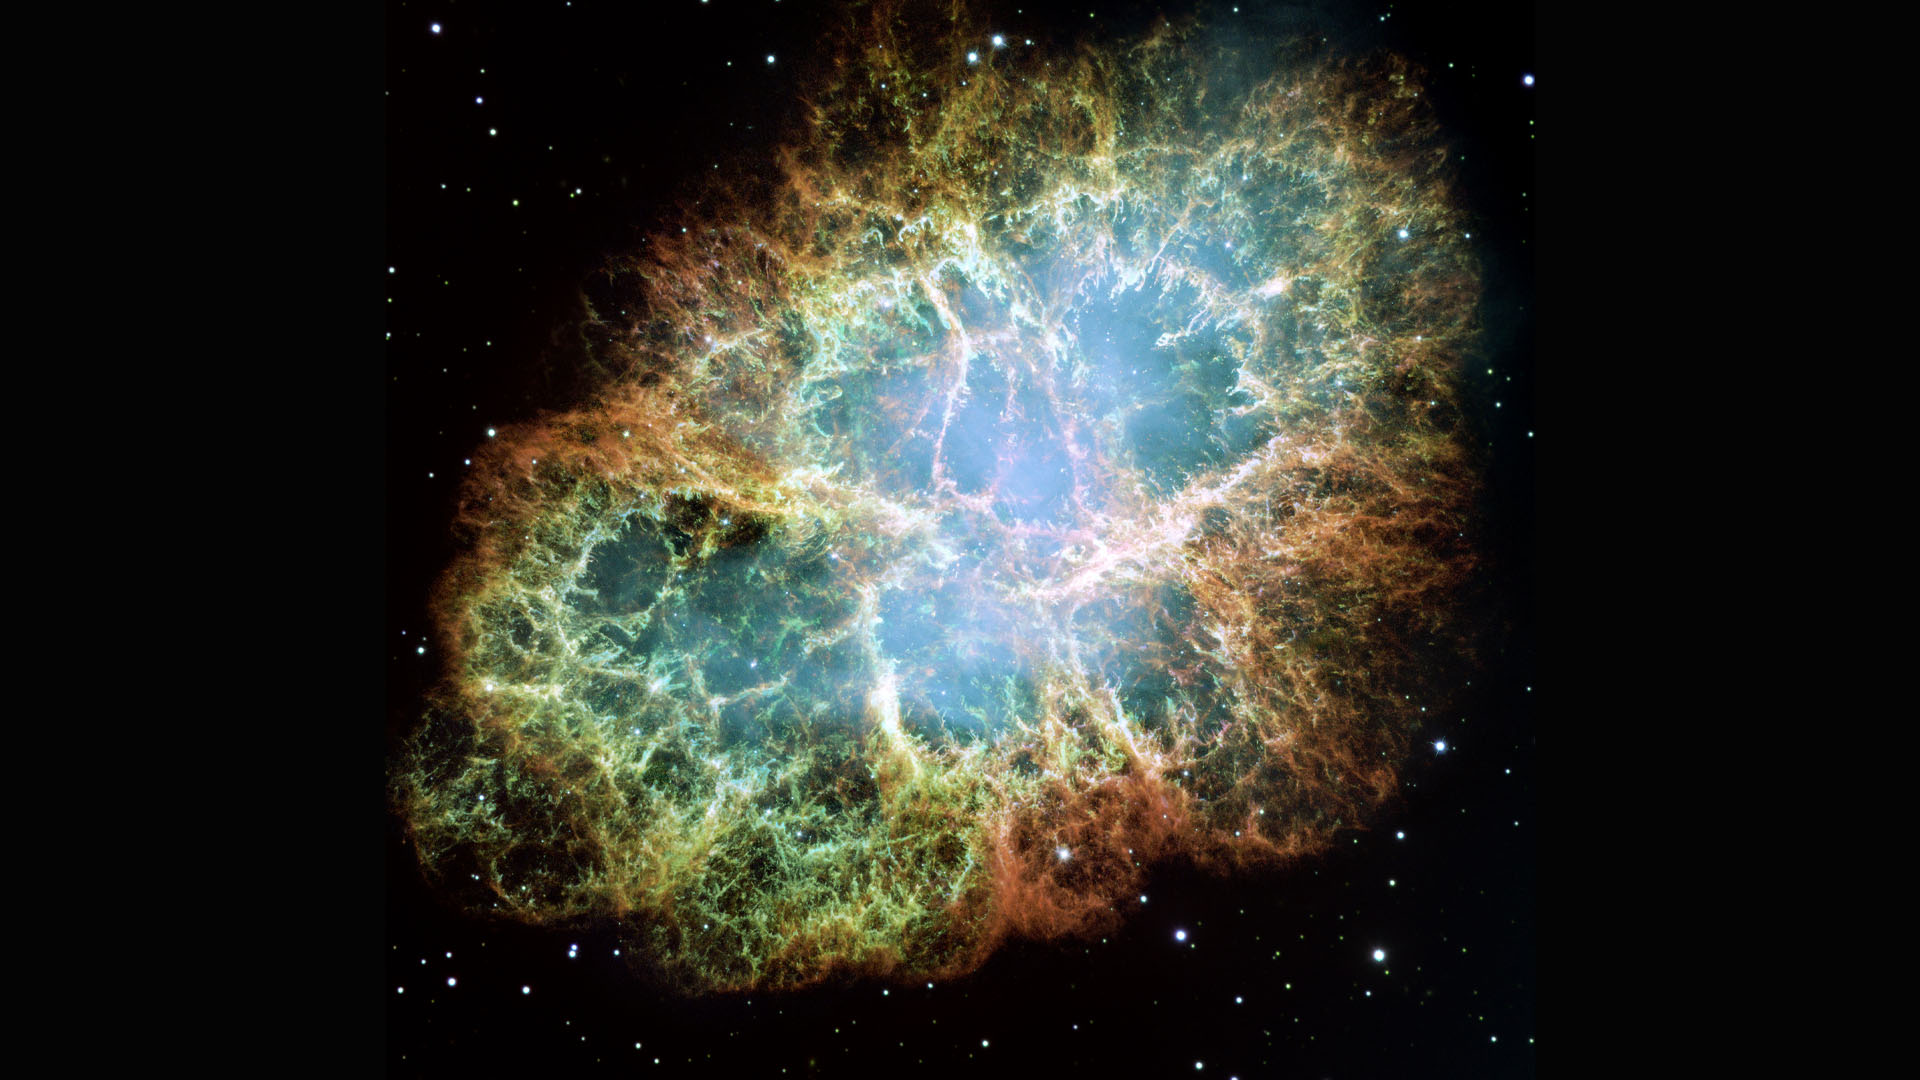 La nébuleuse du Crabe ou les restes d'une supernova, scrutés par Hubble